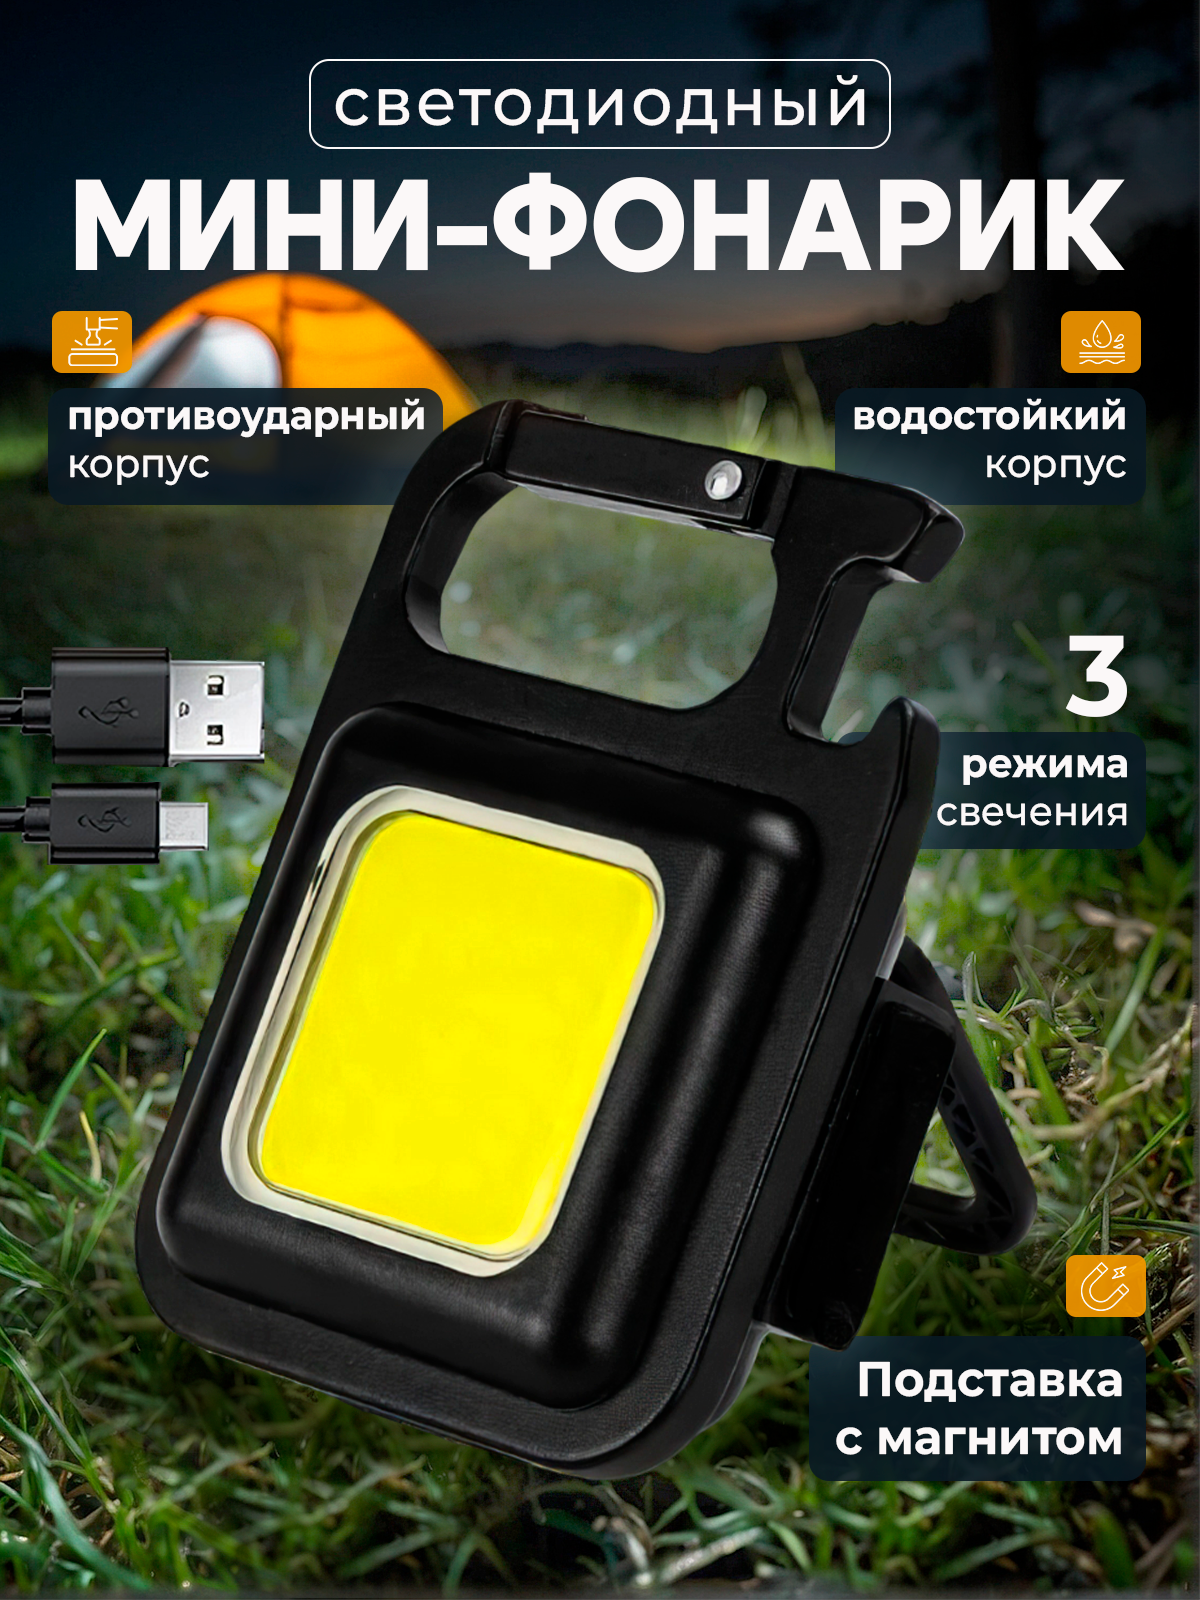 Светодиодный мини-фонарик карманный с магнитом и карабином